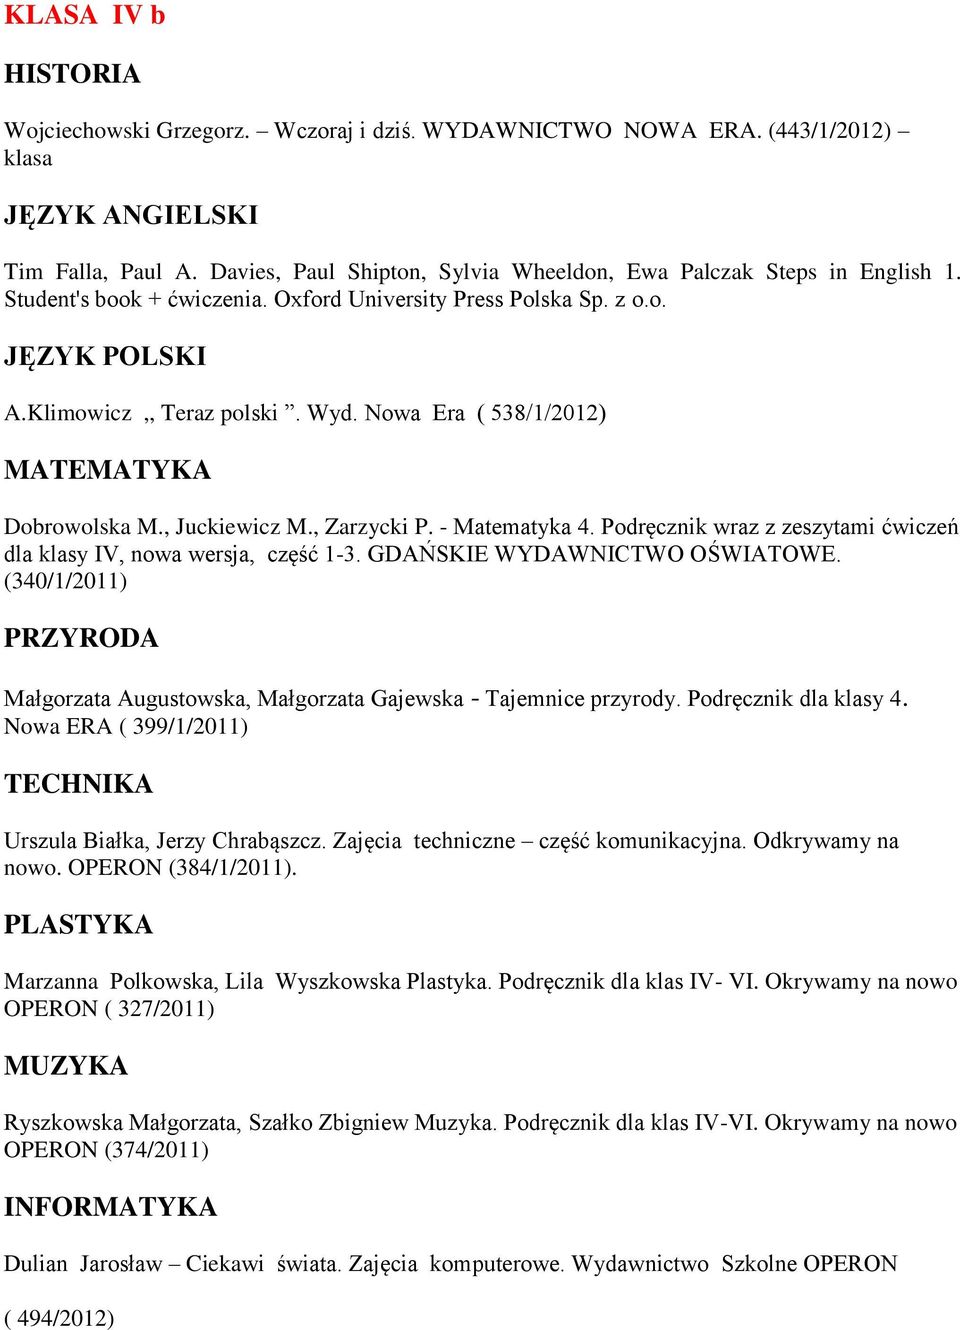 Nowa Era ( 538/1/2012) Dobrowolska M., Juckiewicz M., Zarzycki P. - Matematyka 4. Podręcznik wraz z zeszytami ćwiczeń dla klasy IV, nowa wersja, część 1-3. GDAŃSKIE WYDAWNICTWO OŚWIATOWE.